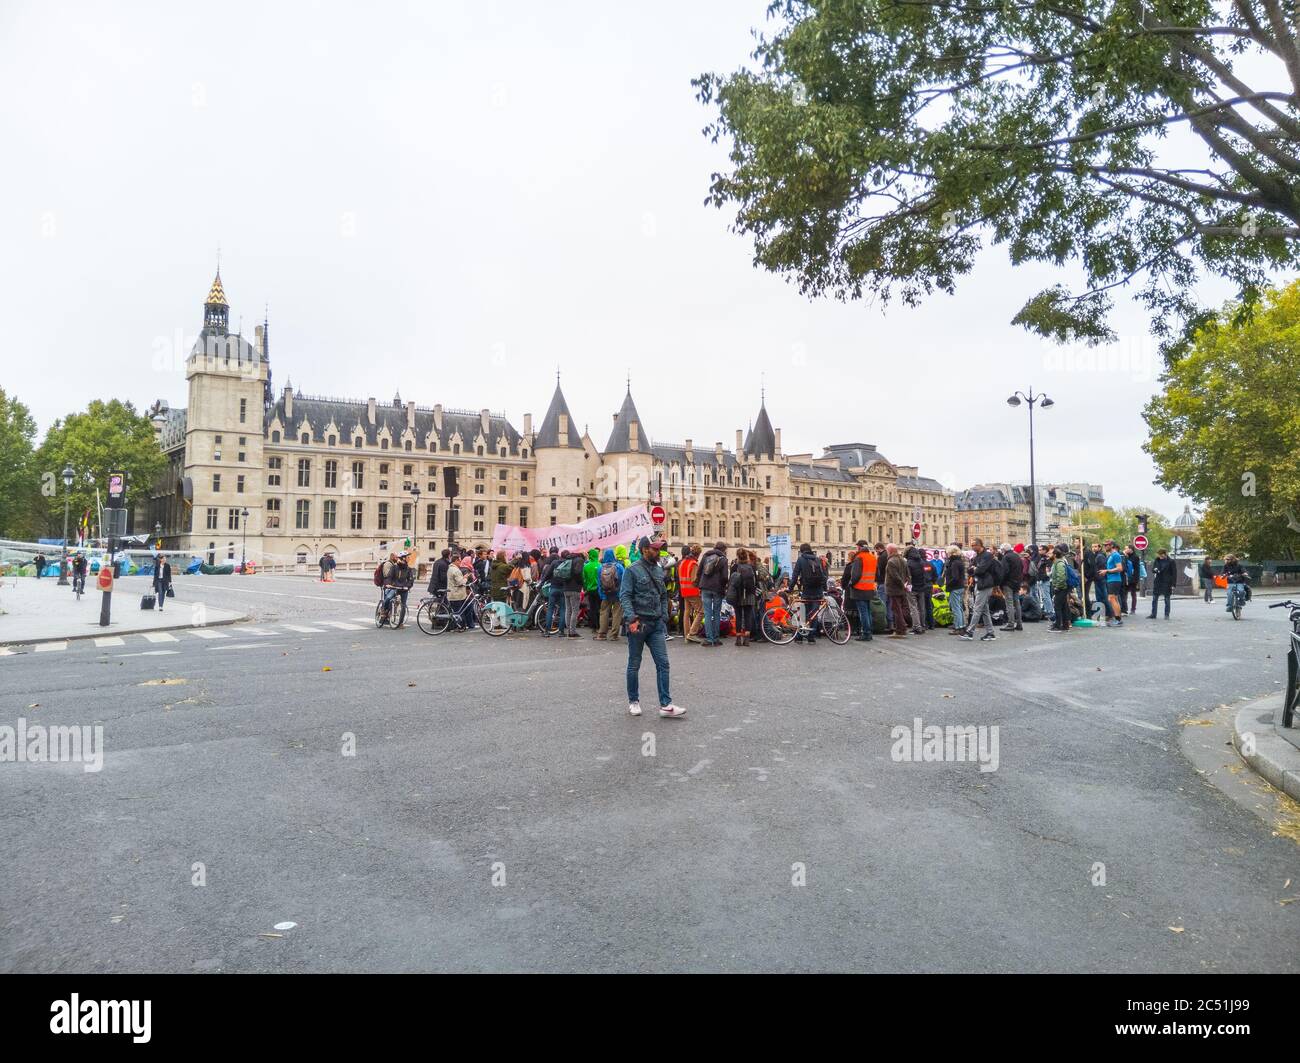 Protesta por la rebelión de extinción (XR), Place du Chatelet, París, Francia. Grupo de presión ambiental para obligar a los gobiernos a tomar medidas sobre el colapso climático Foto de stock